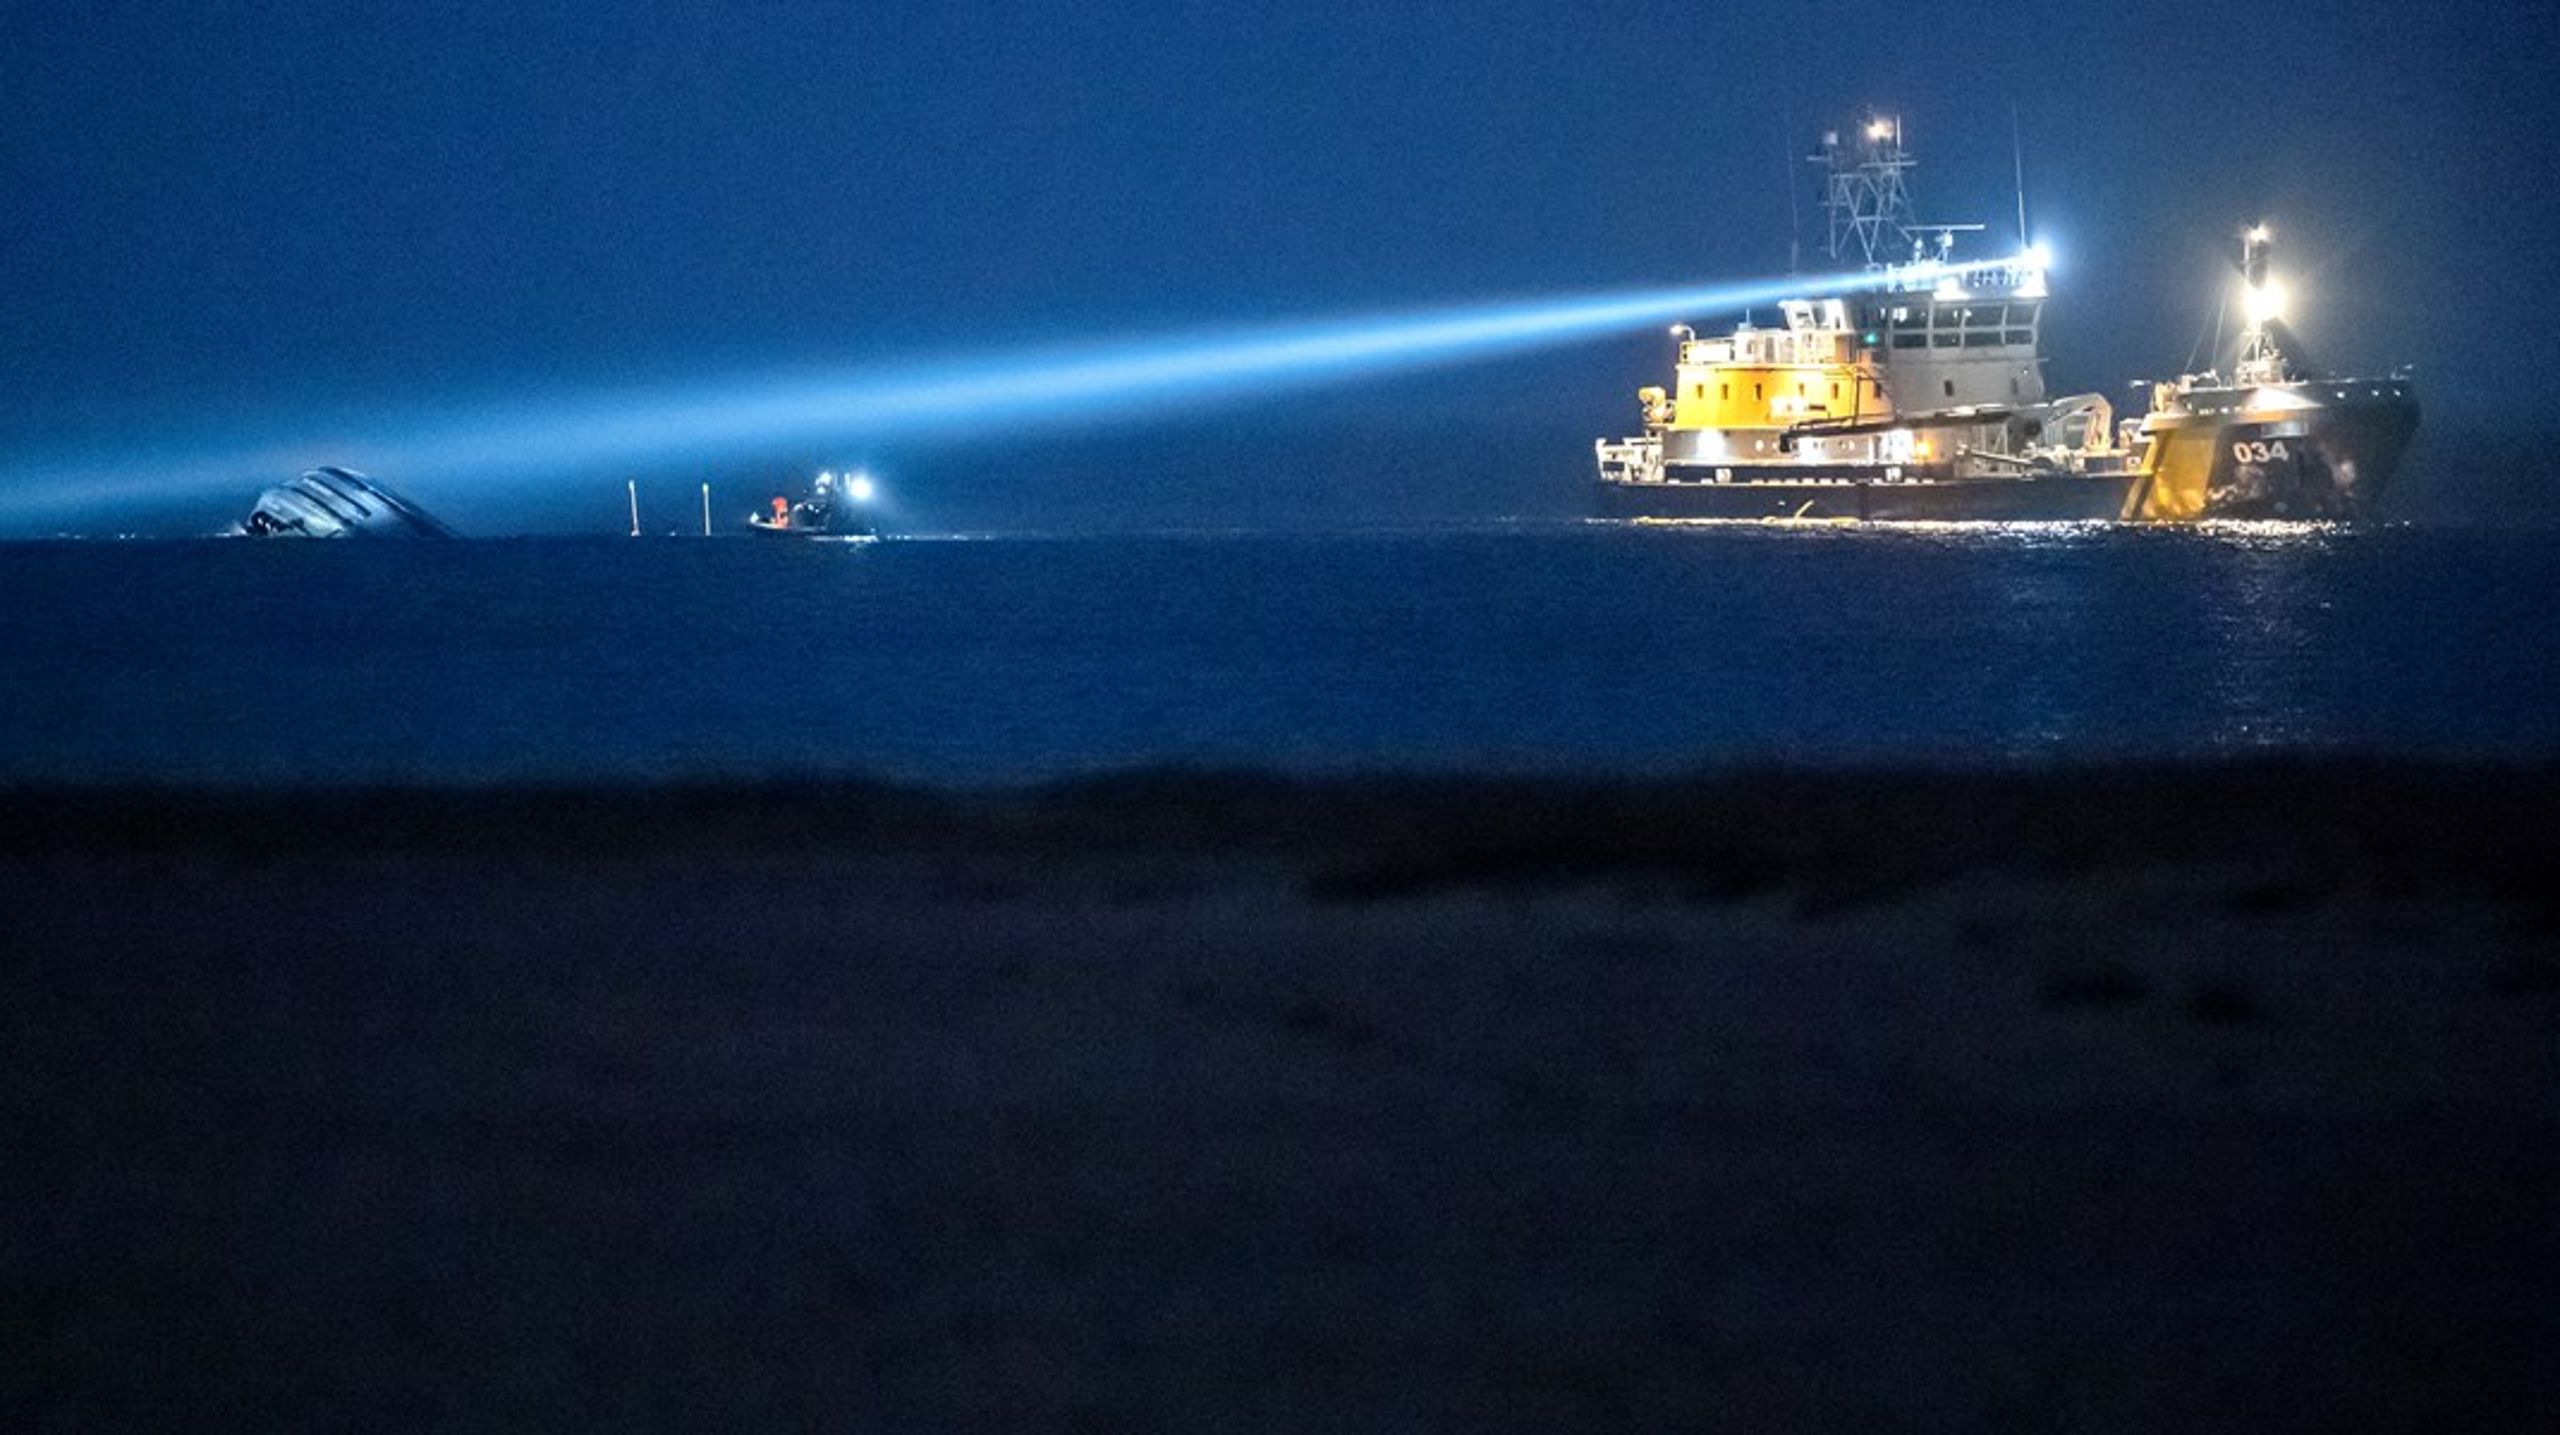 Kustbevakningen arbetar efter kollision&nbsp;i Bornholmsgattet år 2021. Det danska fartyget&nbsp;Karin Høj rammades av det engelskregistrerade lastfartyget Scot Carrier.<br>